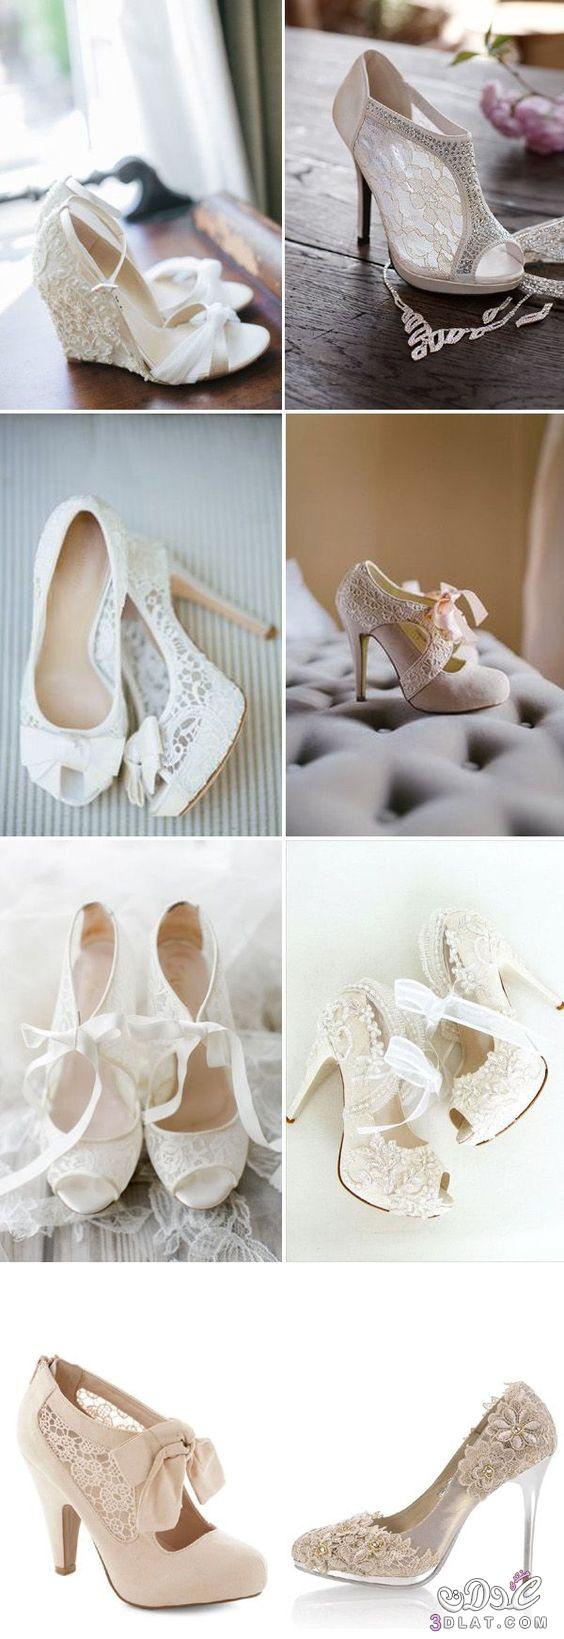 احذيه للعروس جميله ومميزه ، اجدد تصاميم احذيه الزفاف